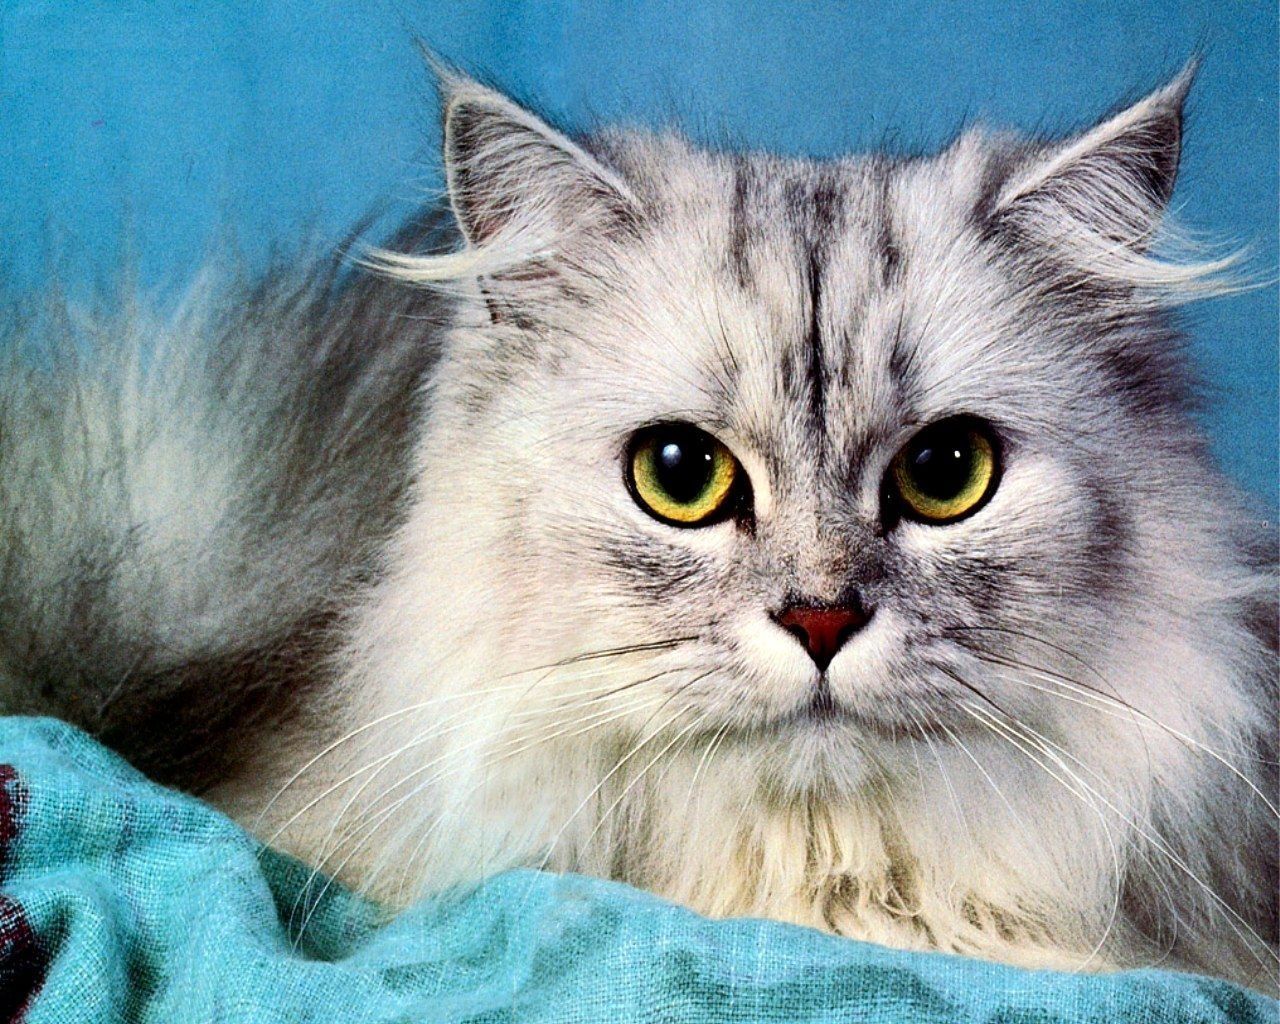 عکس گربه پرشین با چشمان زرد نافذ در کیفیت عالی